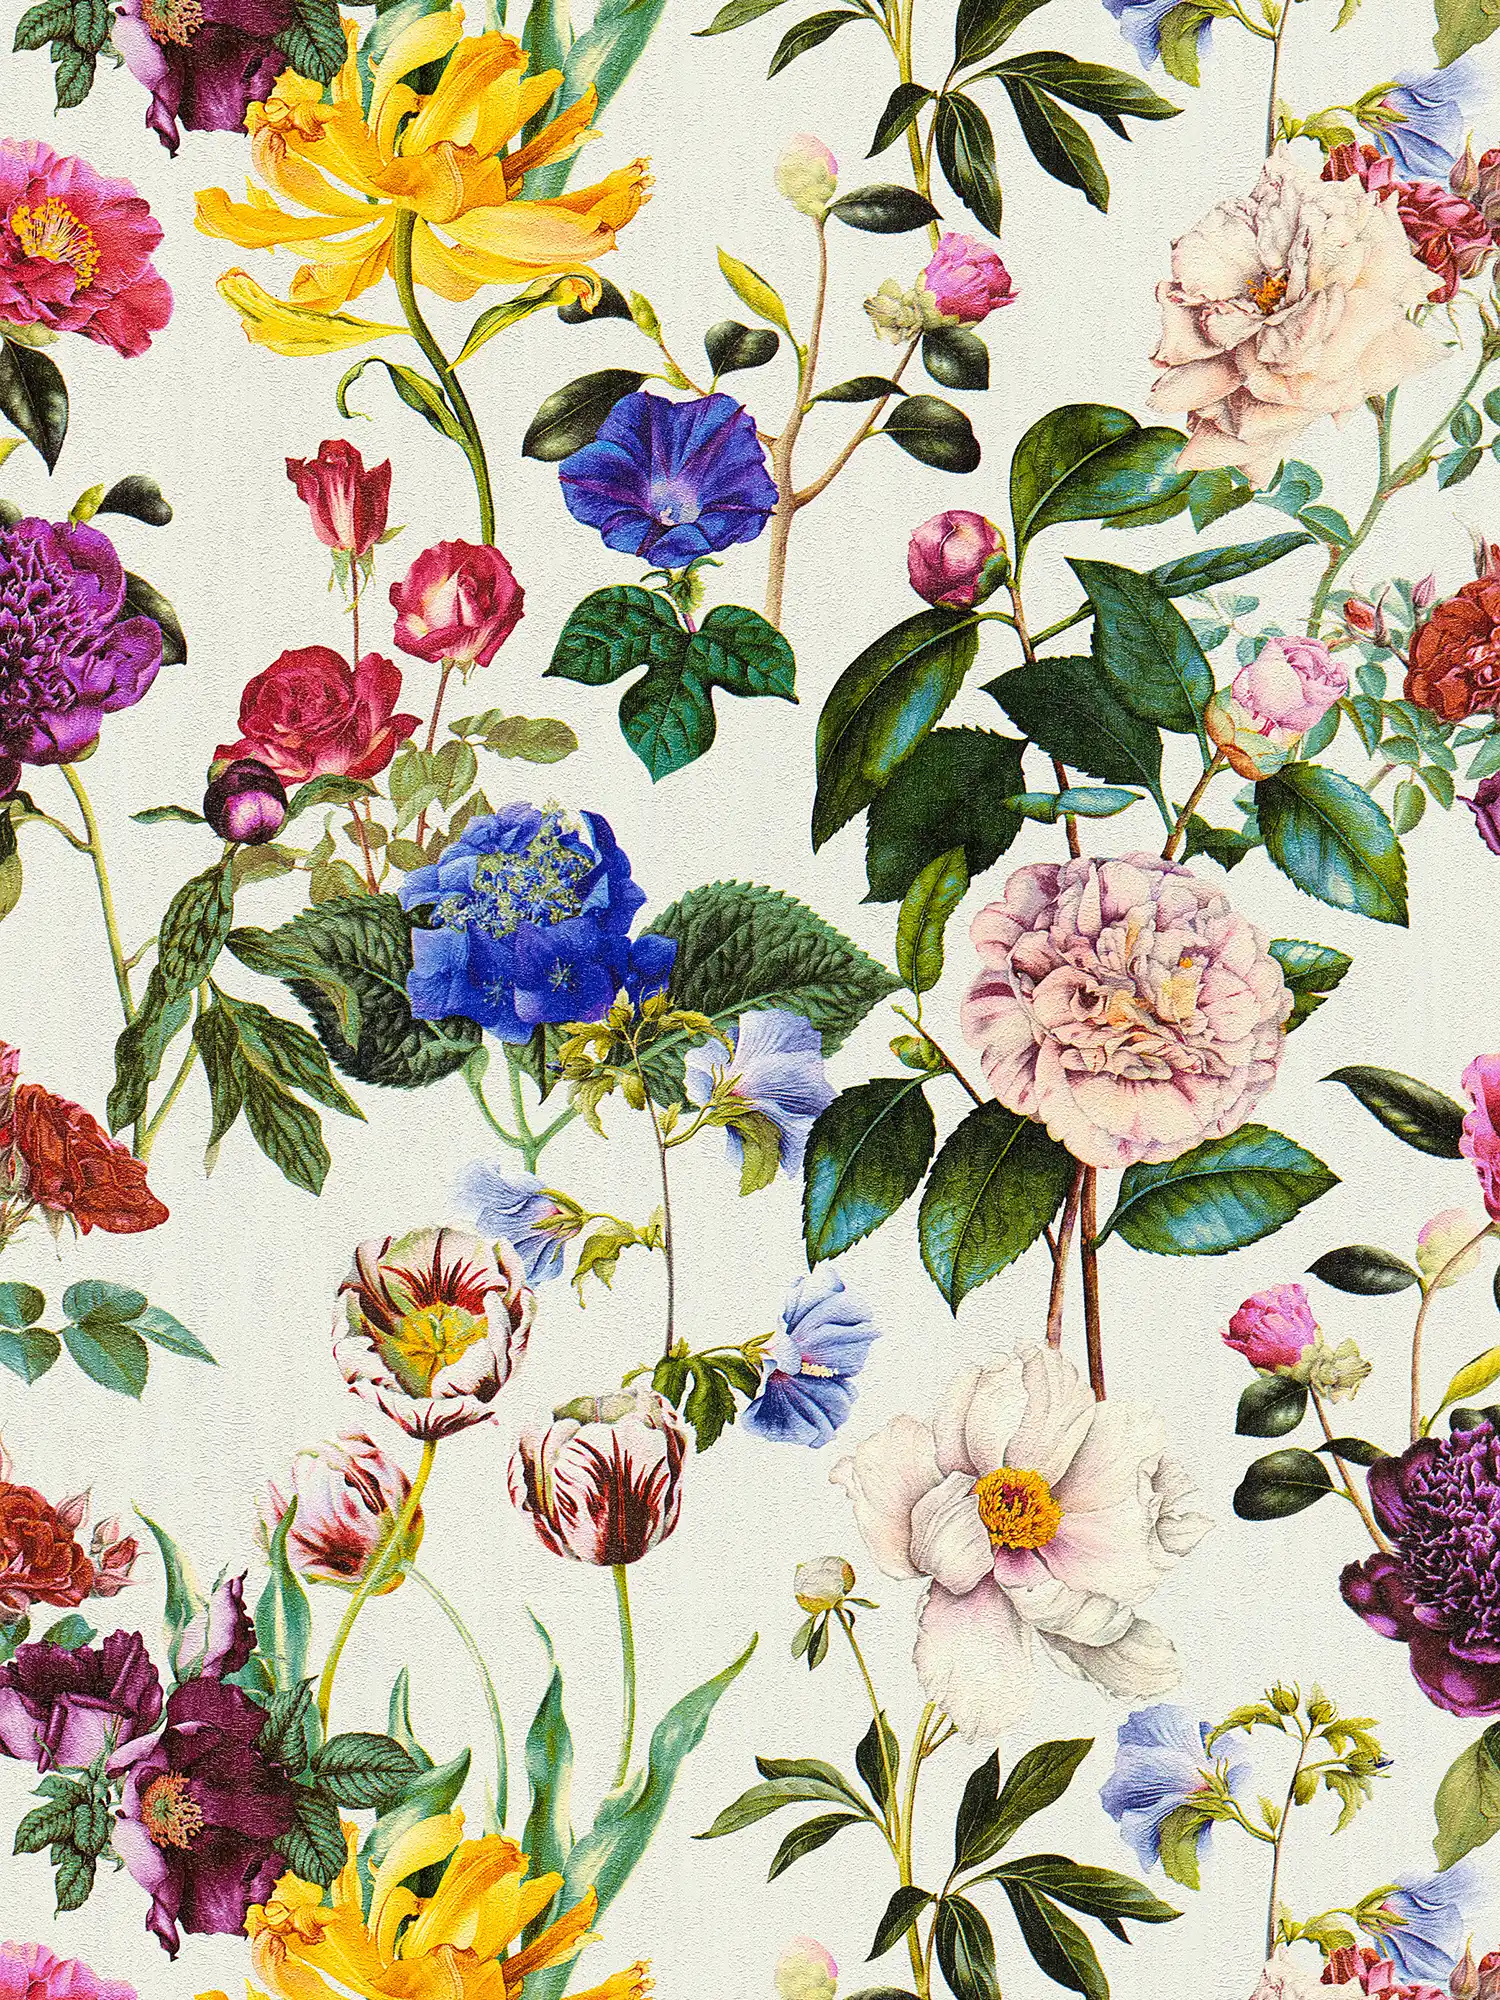 Blüten-Tapete mit Blumen in leuchtenden Farben – Bunt, Grün, Grau
